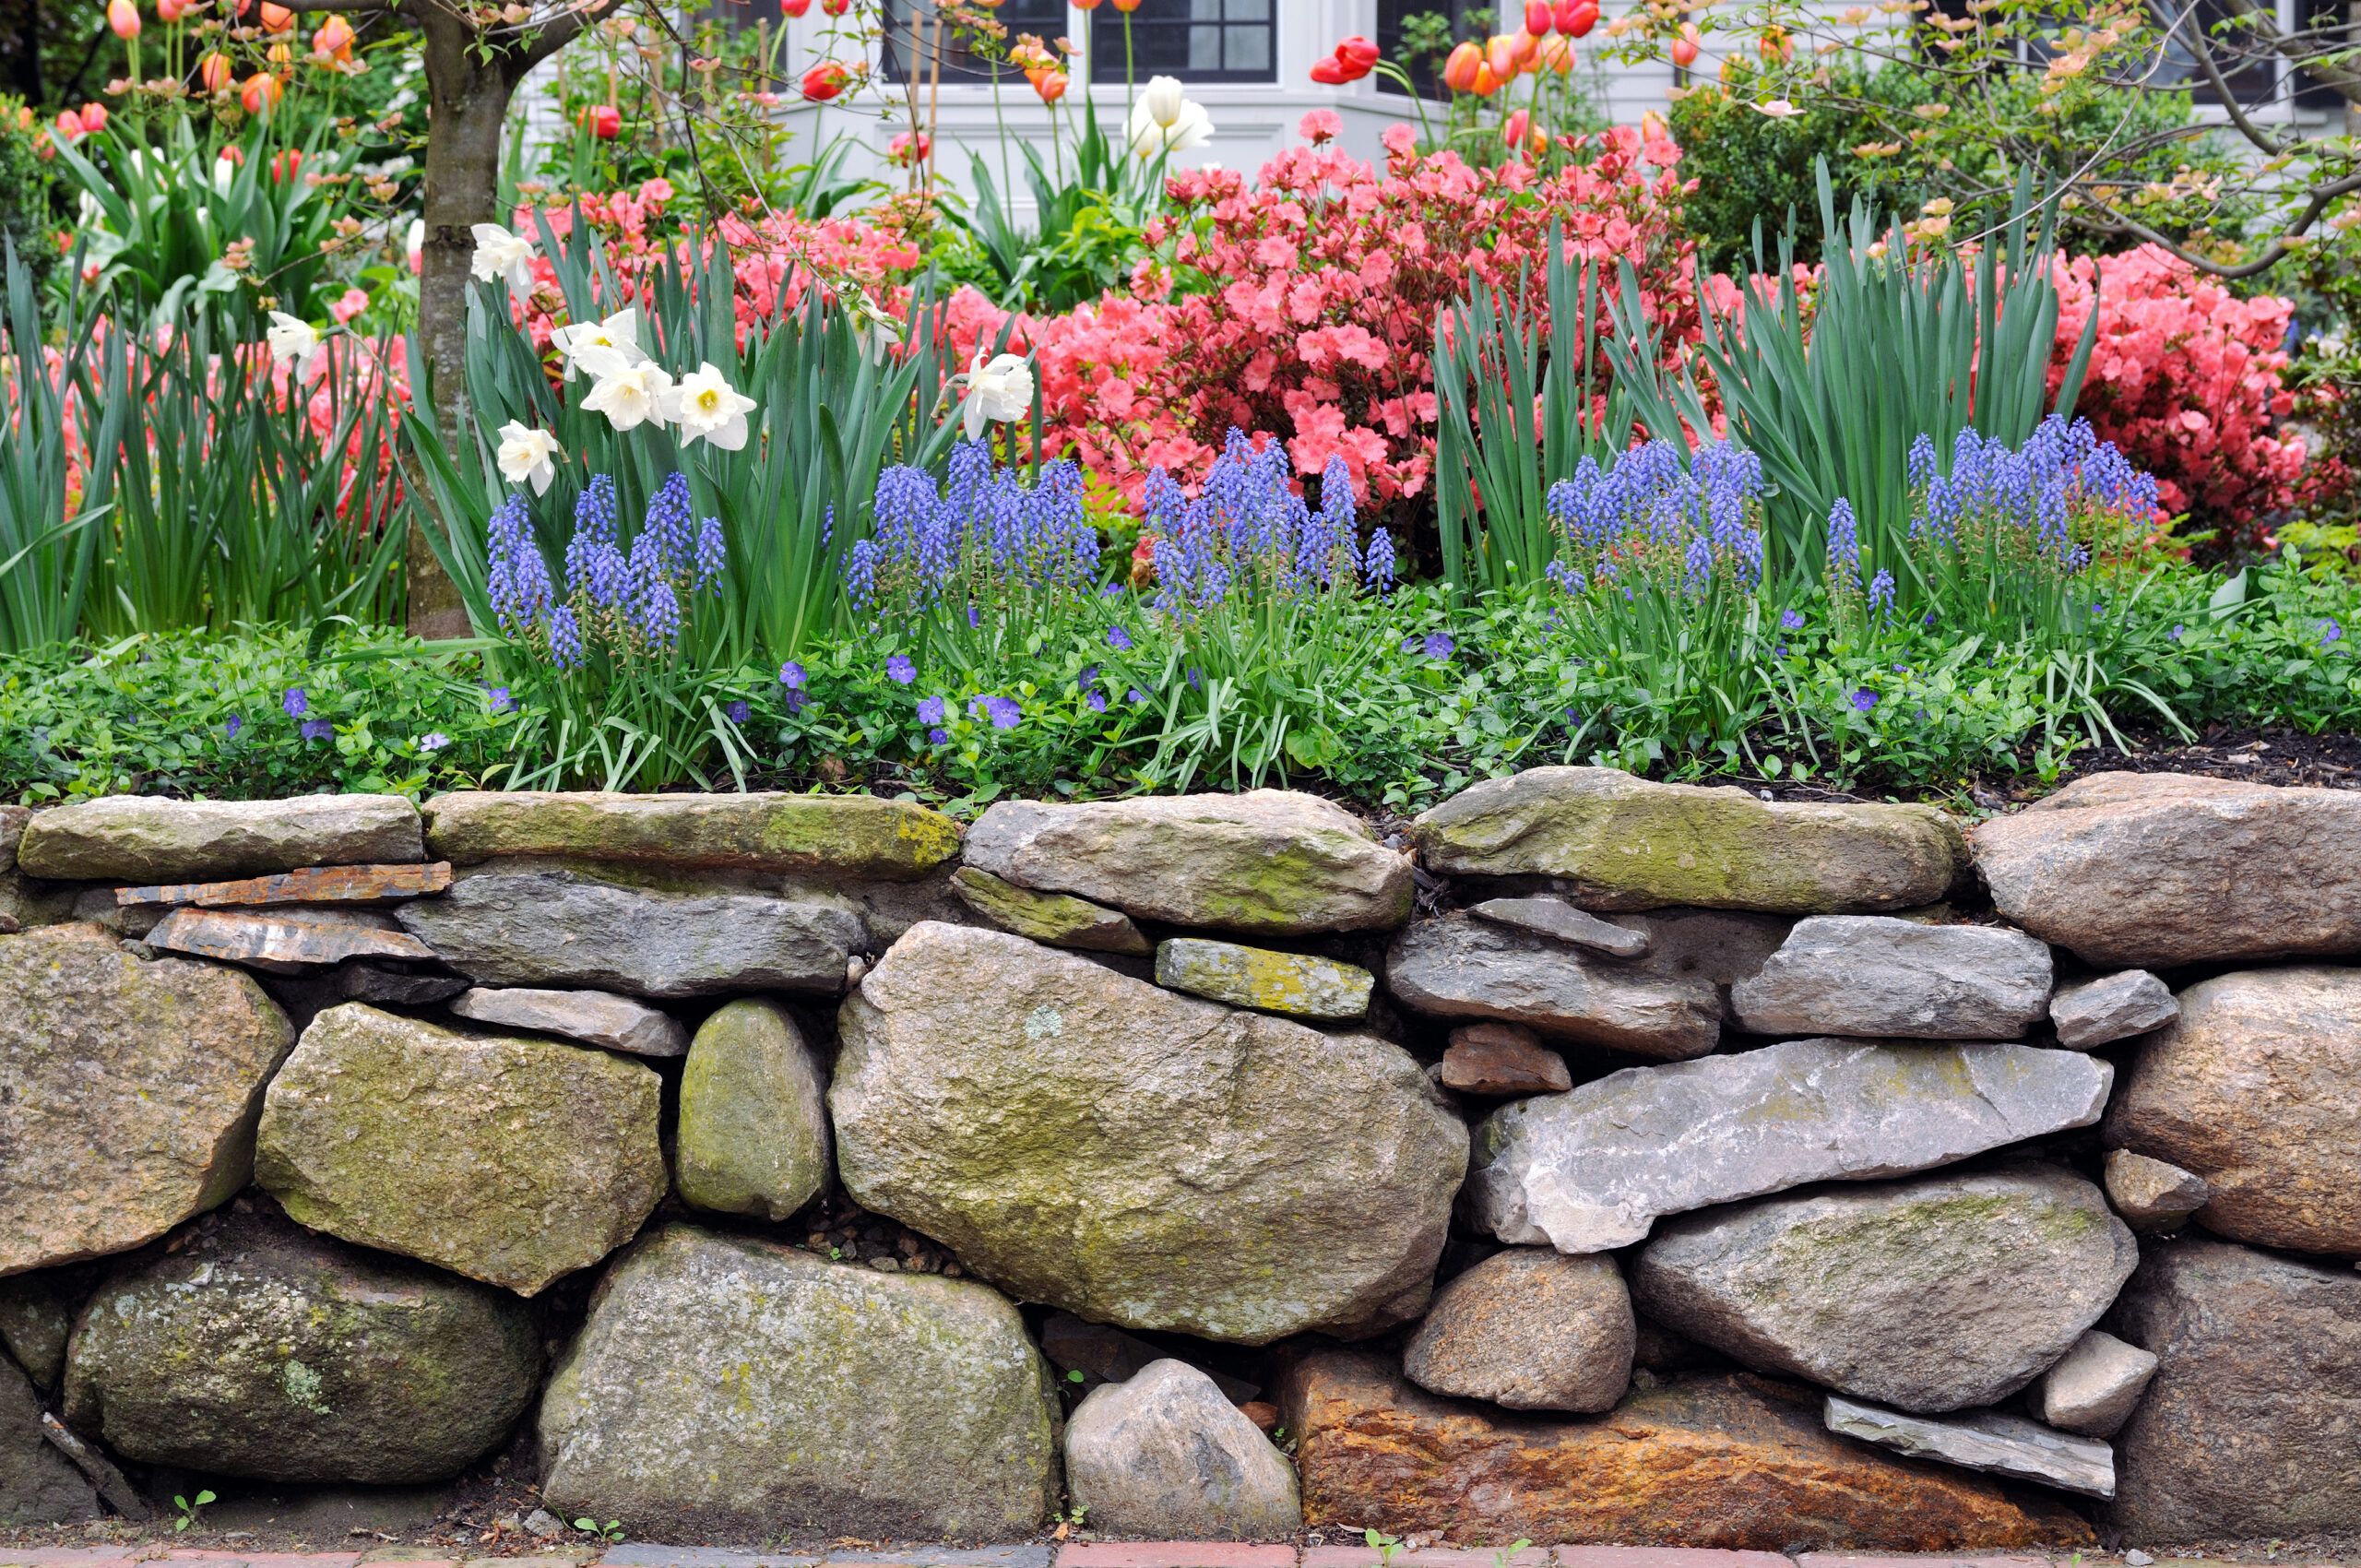 A natural stone garden wall